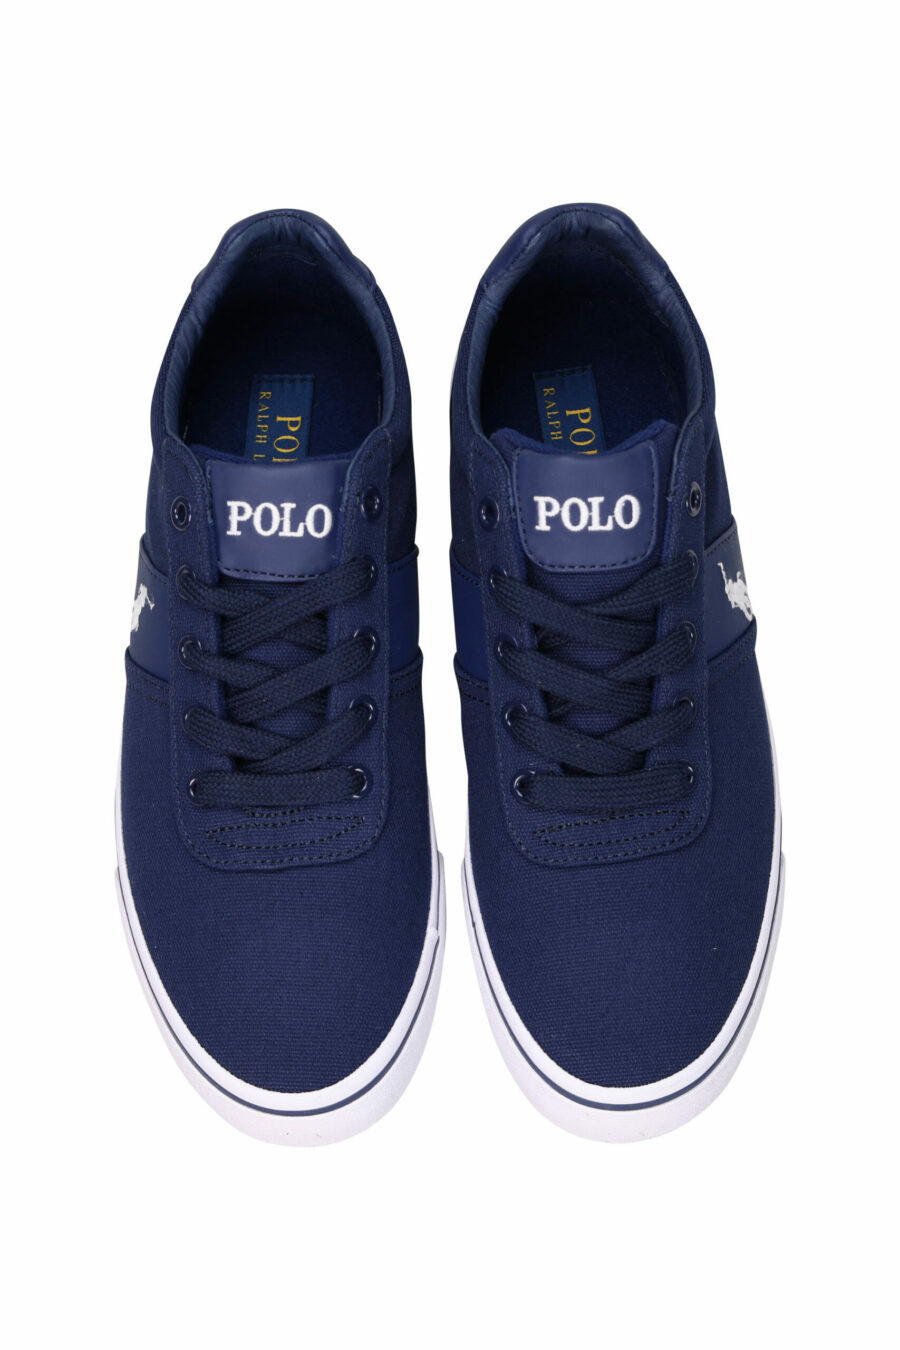 Zapatillas azules oscuras con minilogo "polo" y suela blanca - 3611588439341 4 scaled